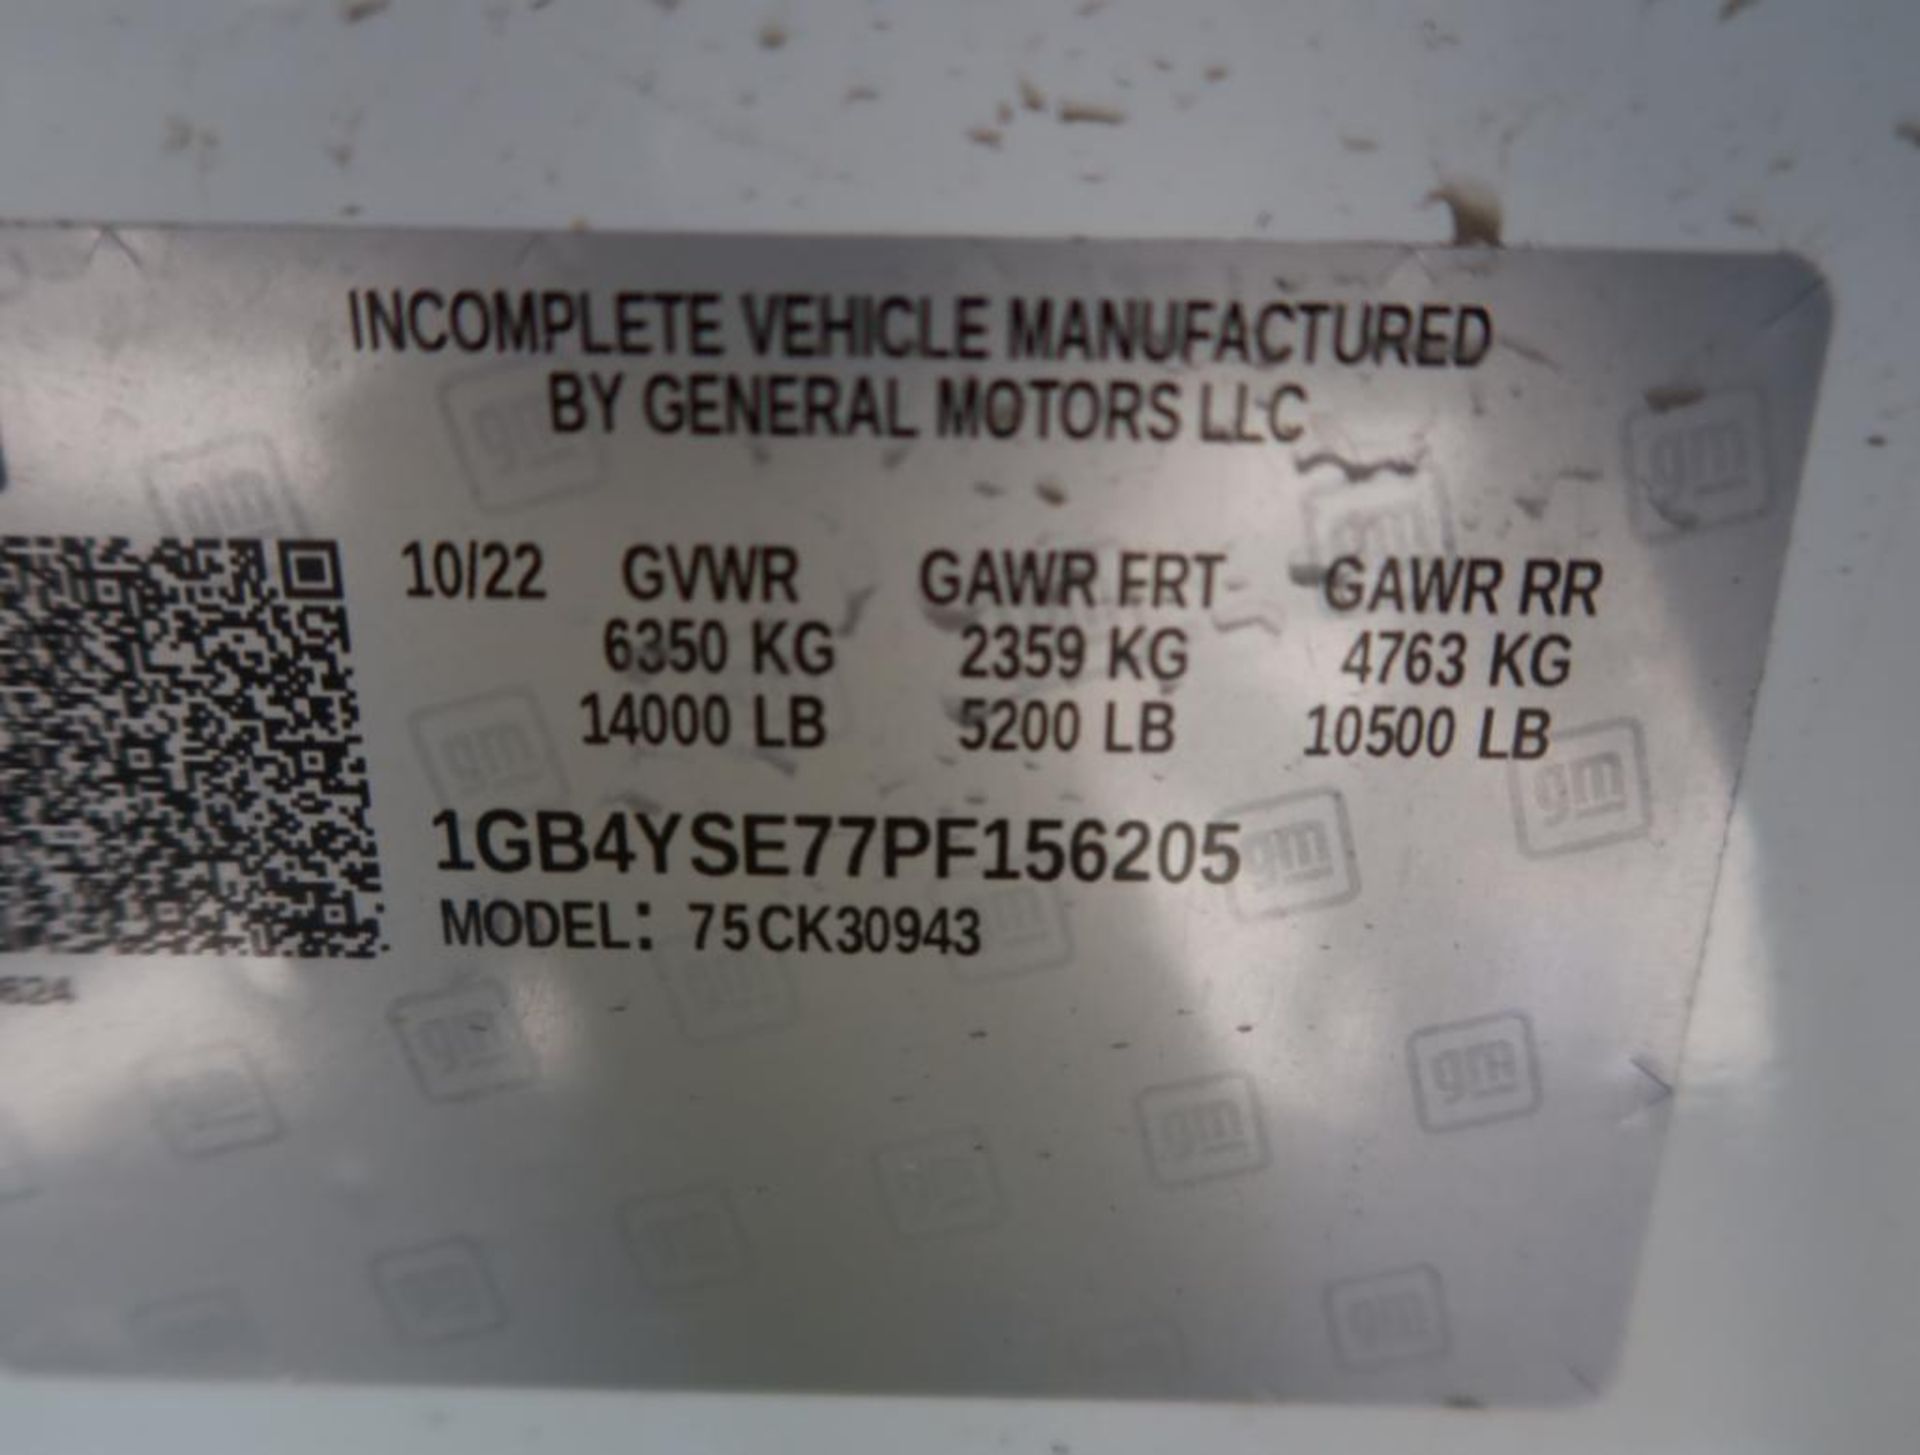 2023 Chevy Silverado 3500 4WD Crew Cab Wide Utility Bed Dual Wheel, Gas, License# AT2 0BH, VIN 1GB4Y - Image 8 of 8